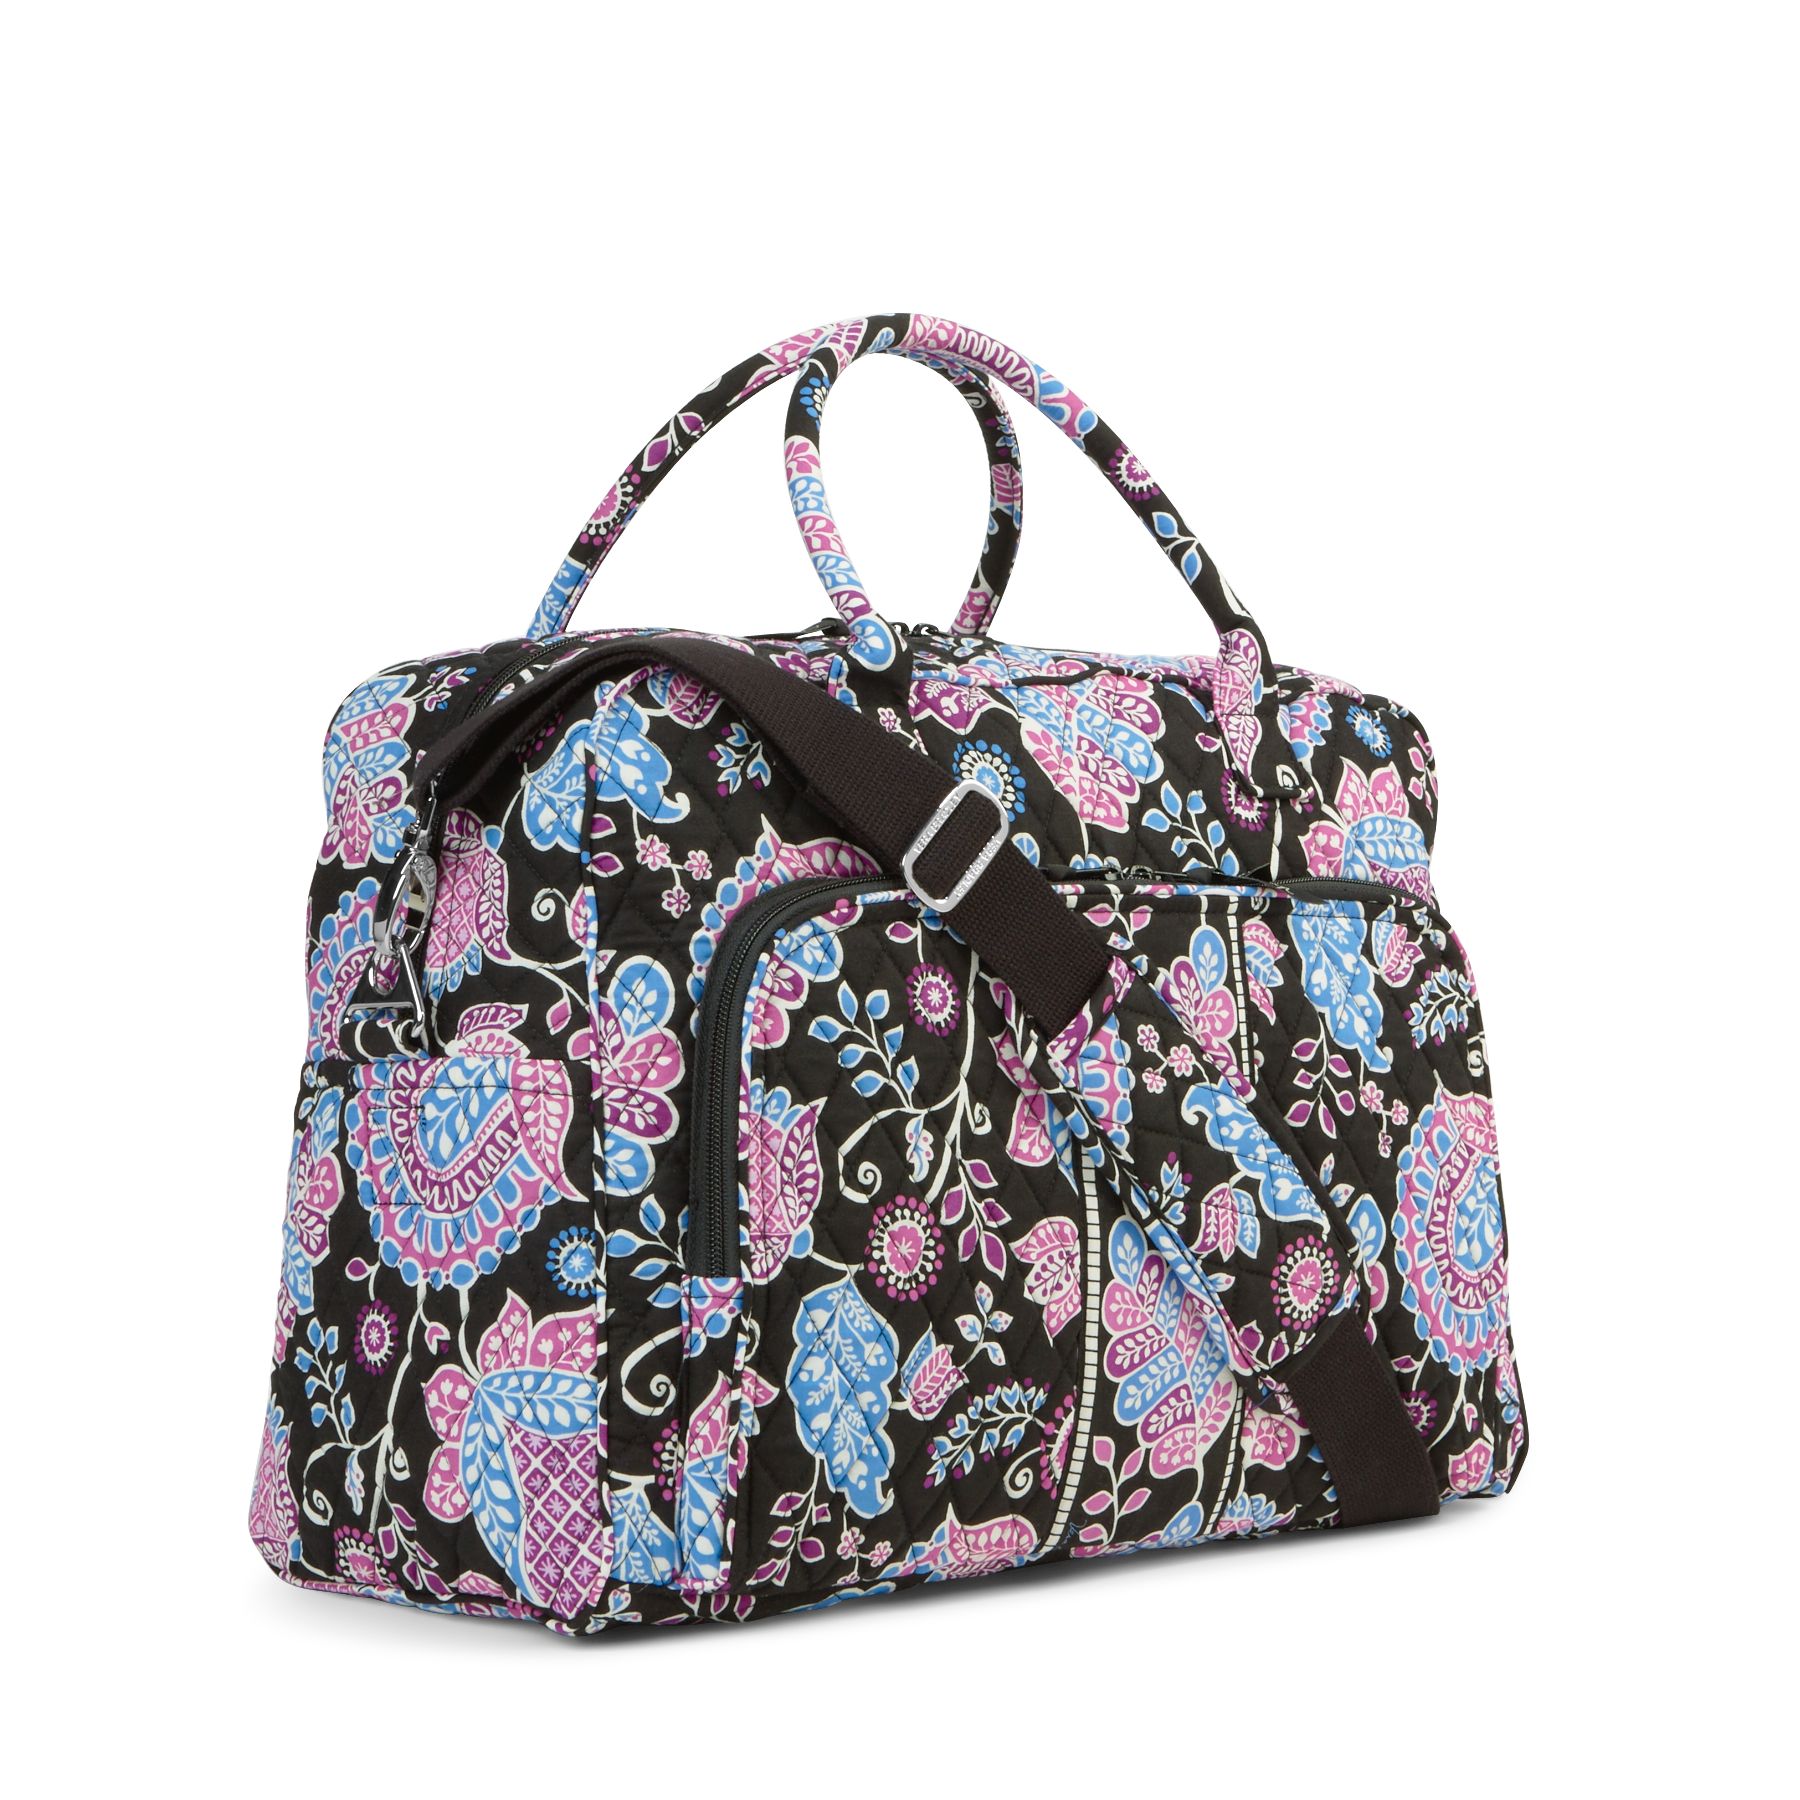 Vera Bradley Weekender Duffel Travel Bag | eBay